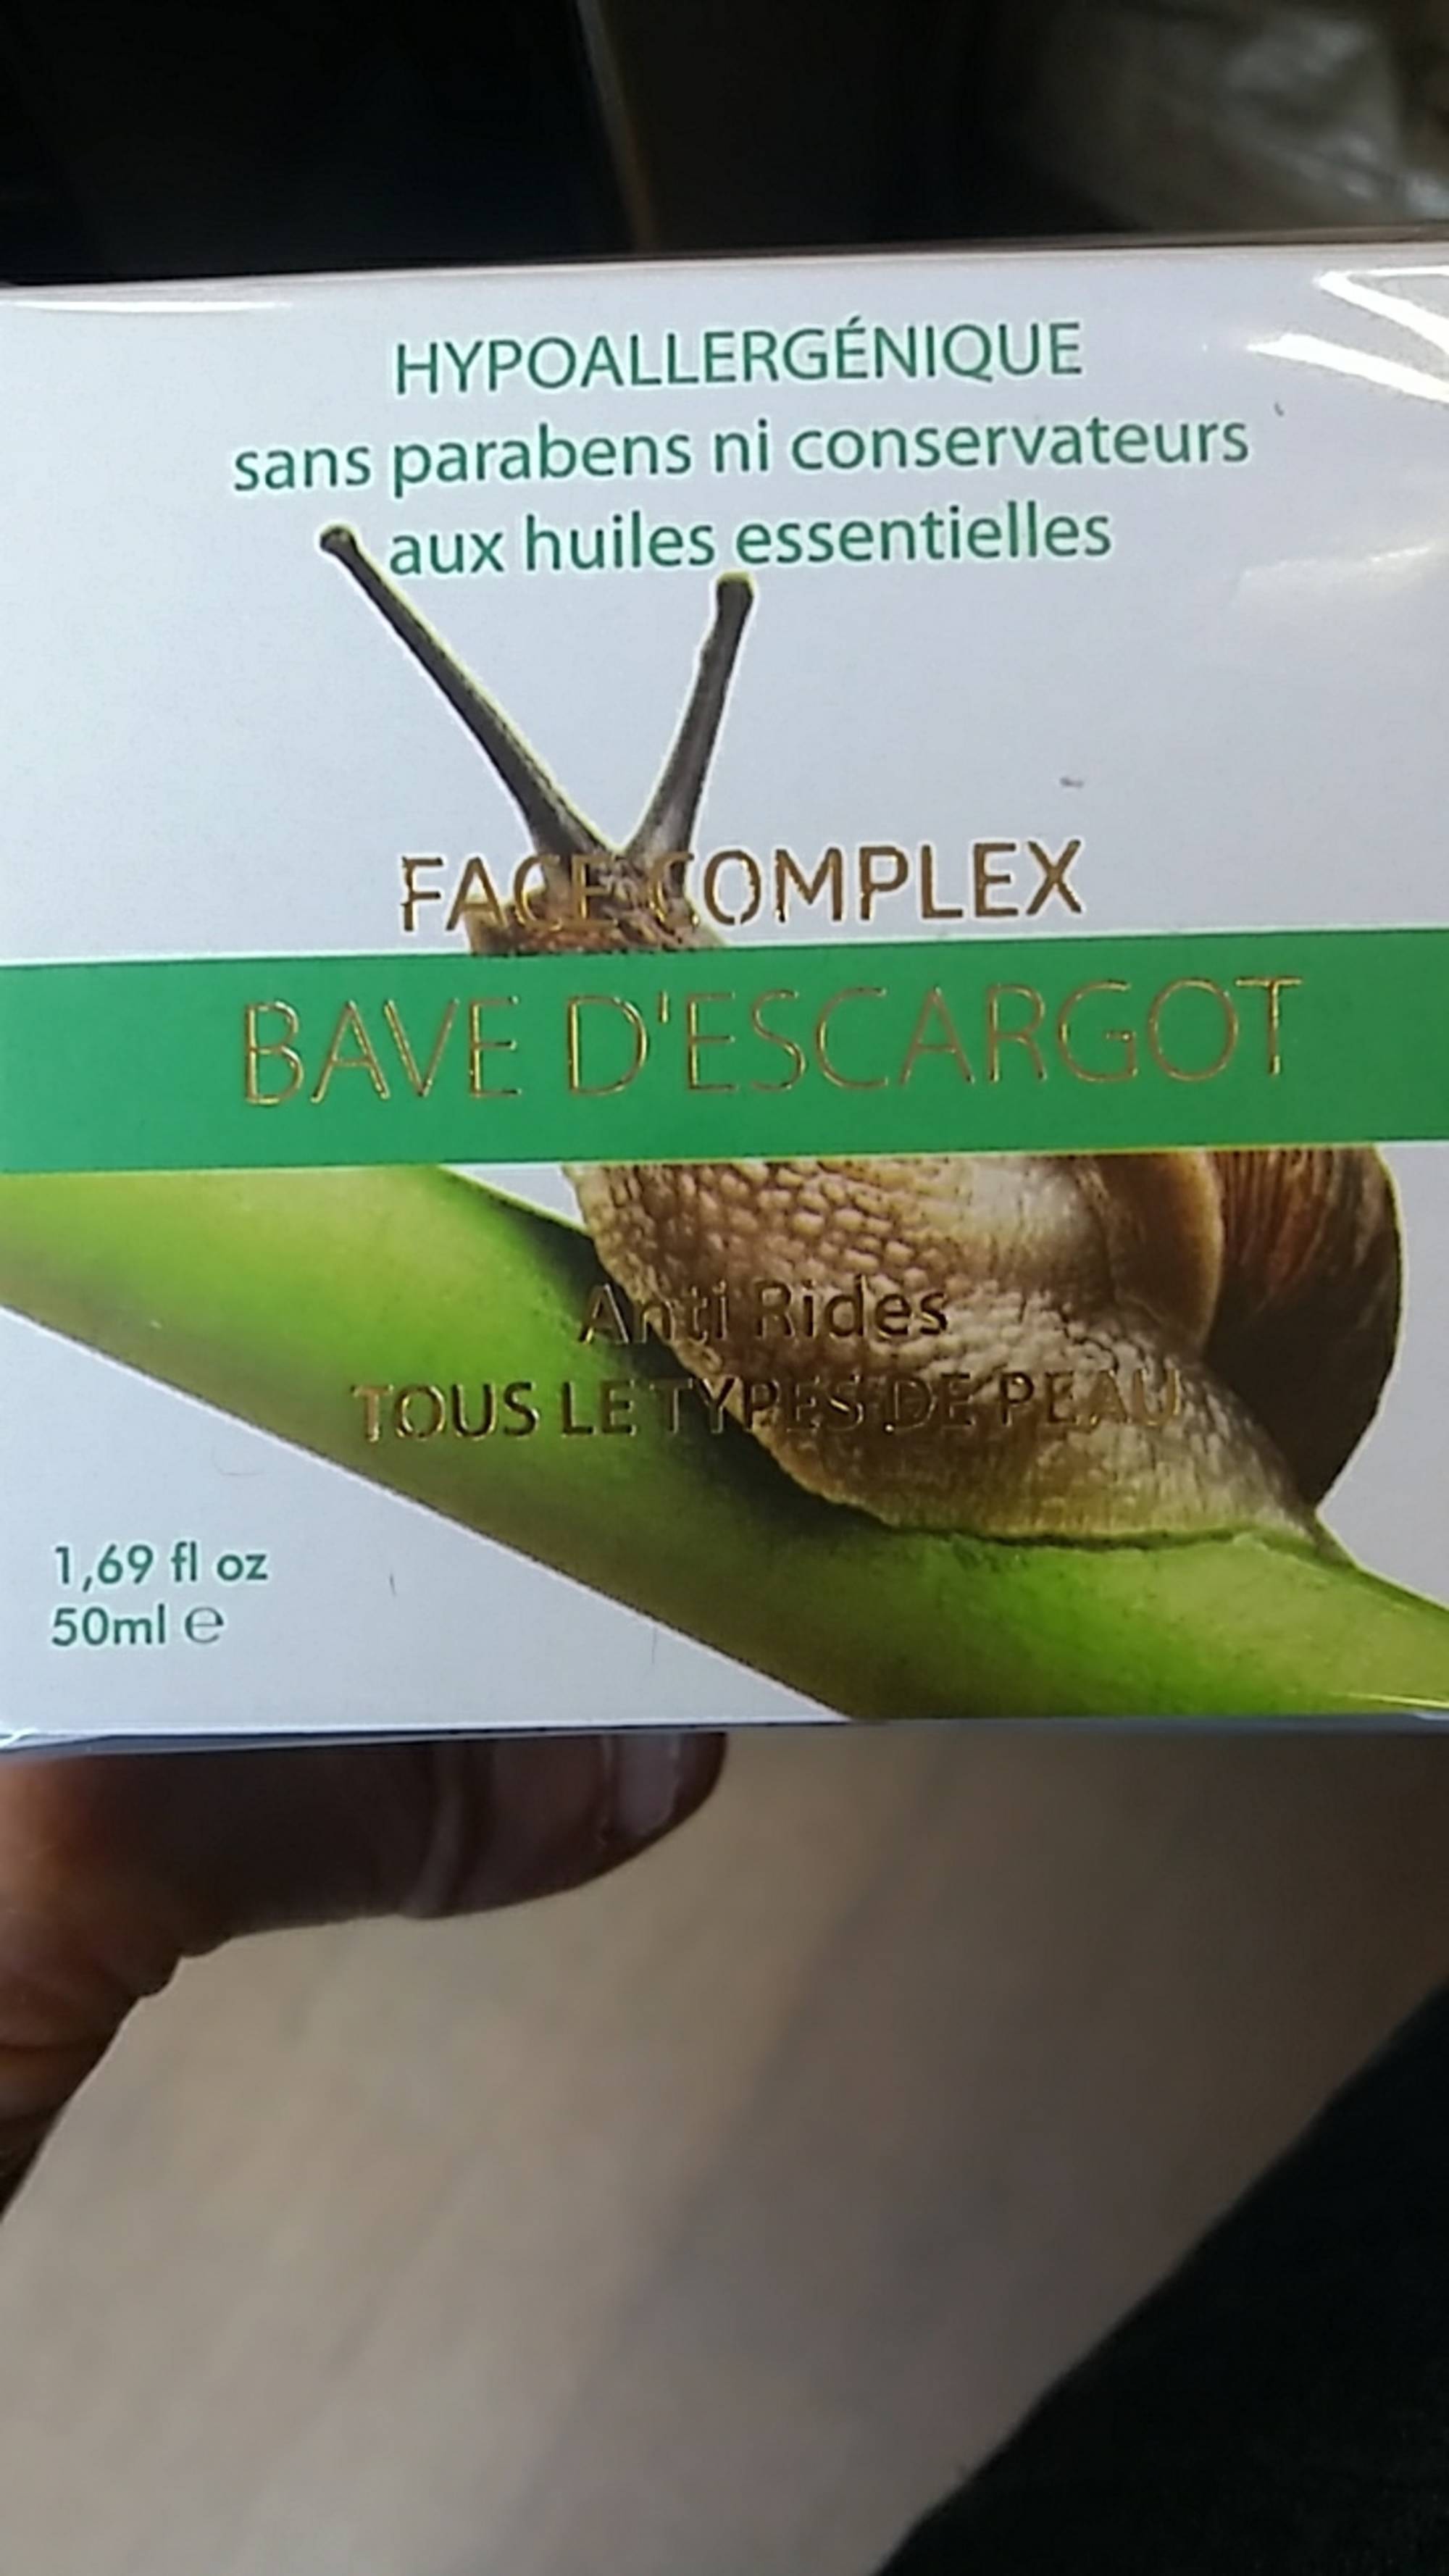 FACE COMPLEX - Bave d'escargot - Anti-rides hypoallergénique